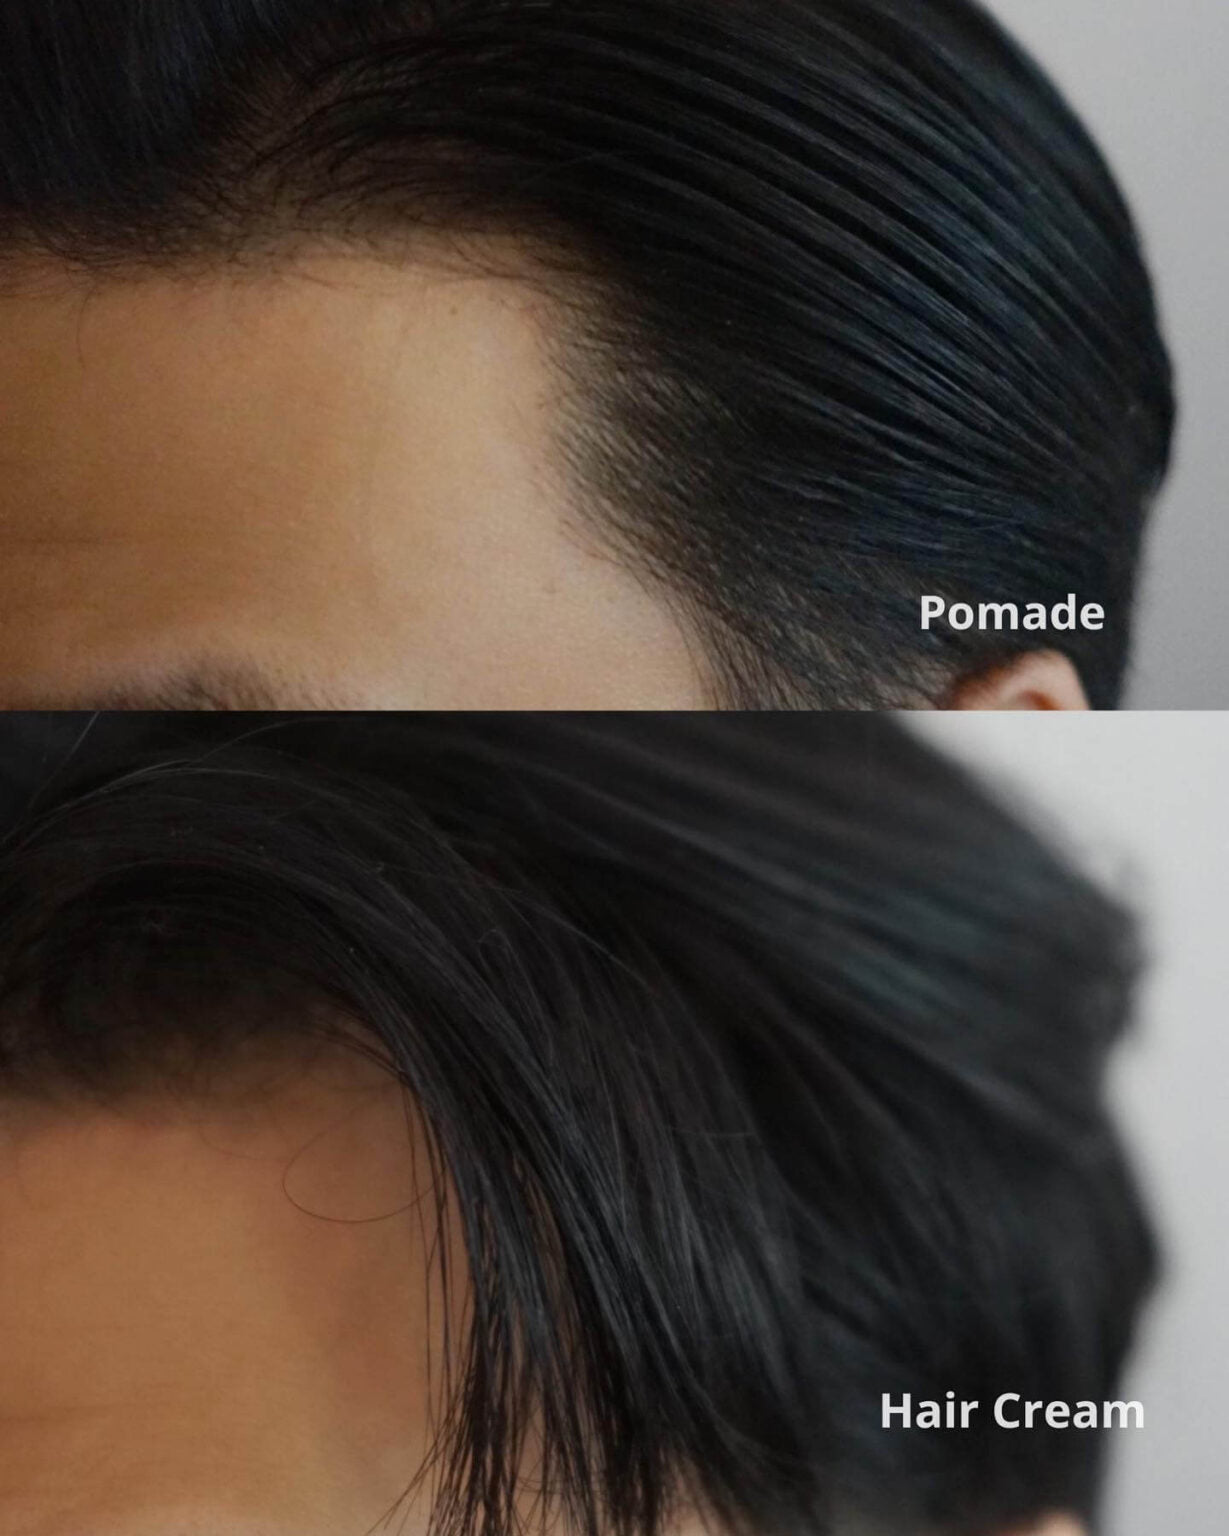 Pomp & Co Hair Cream 120ml / 500ml